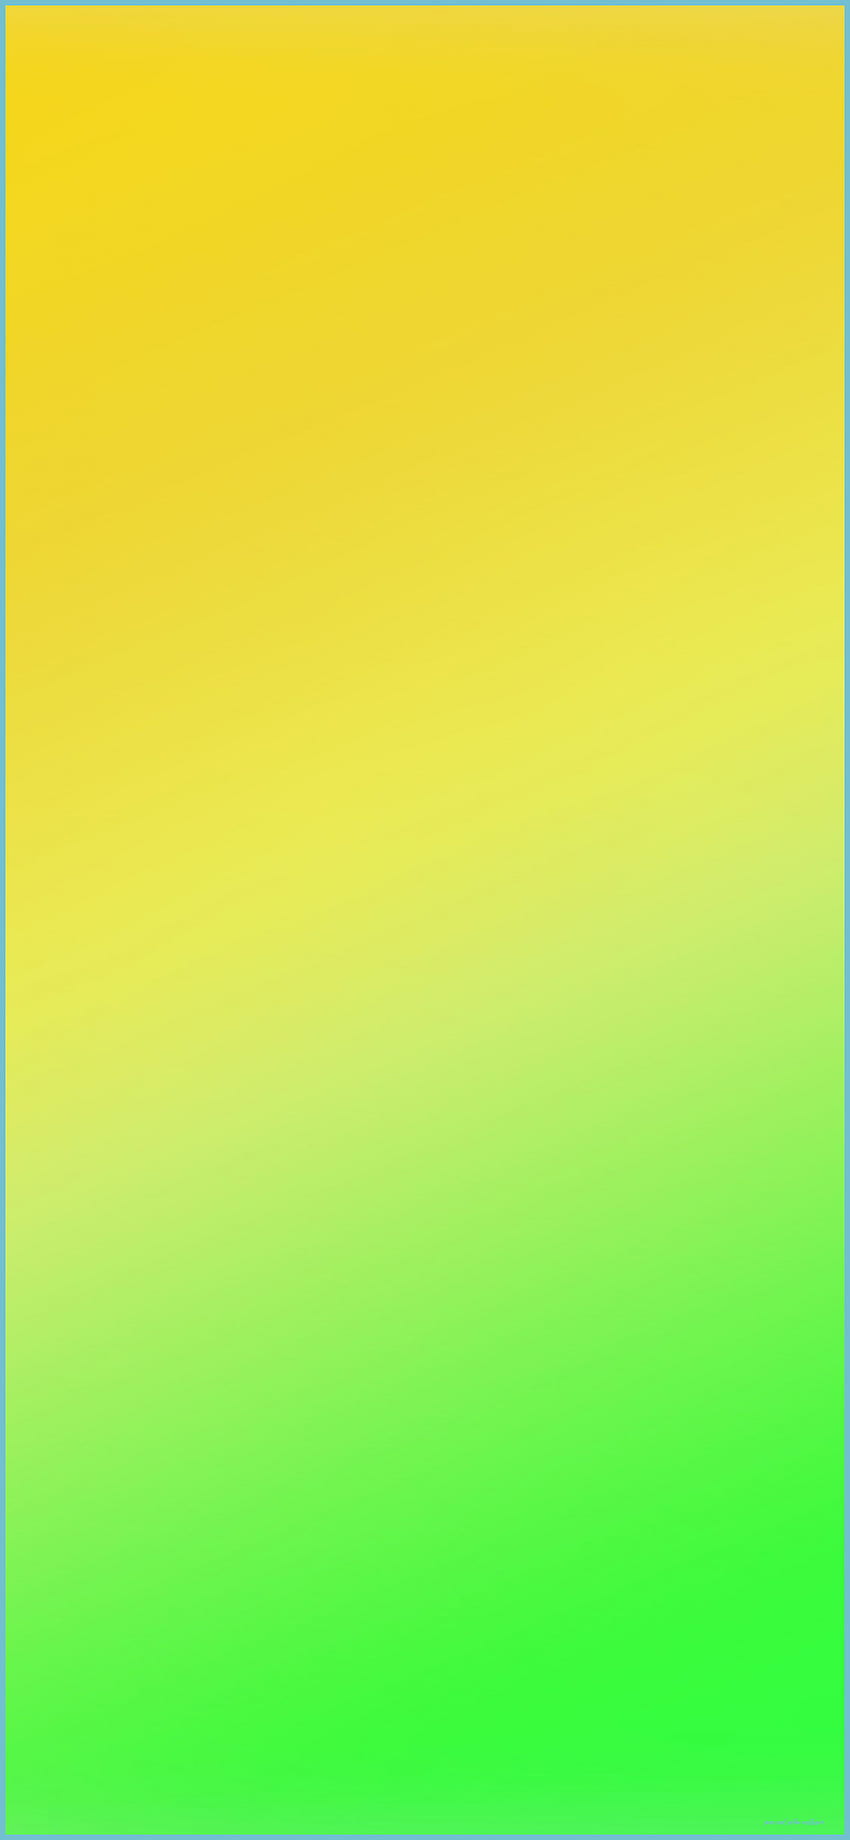 iPhone verde amarelo com cachorro - verde e amarelo, verde frio e amarelo Papel de parede de celular HD